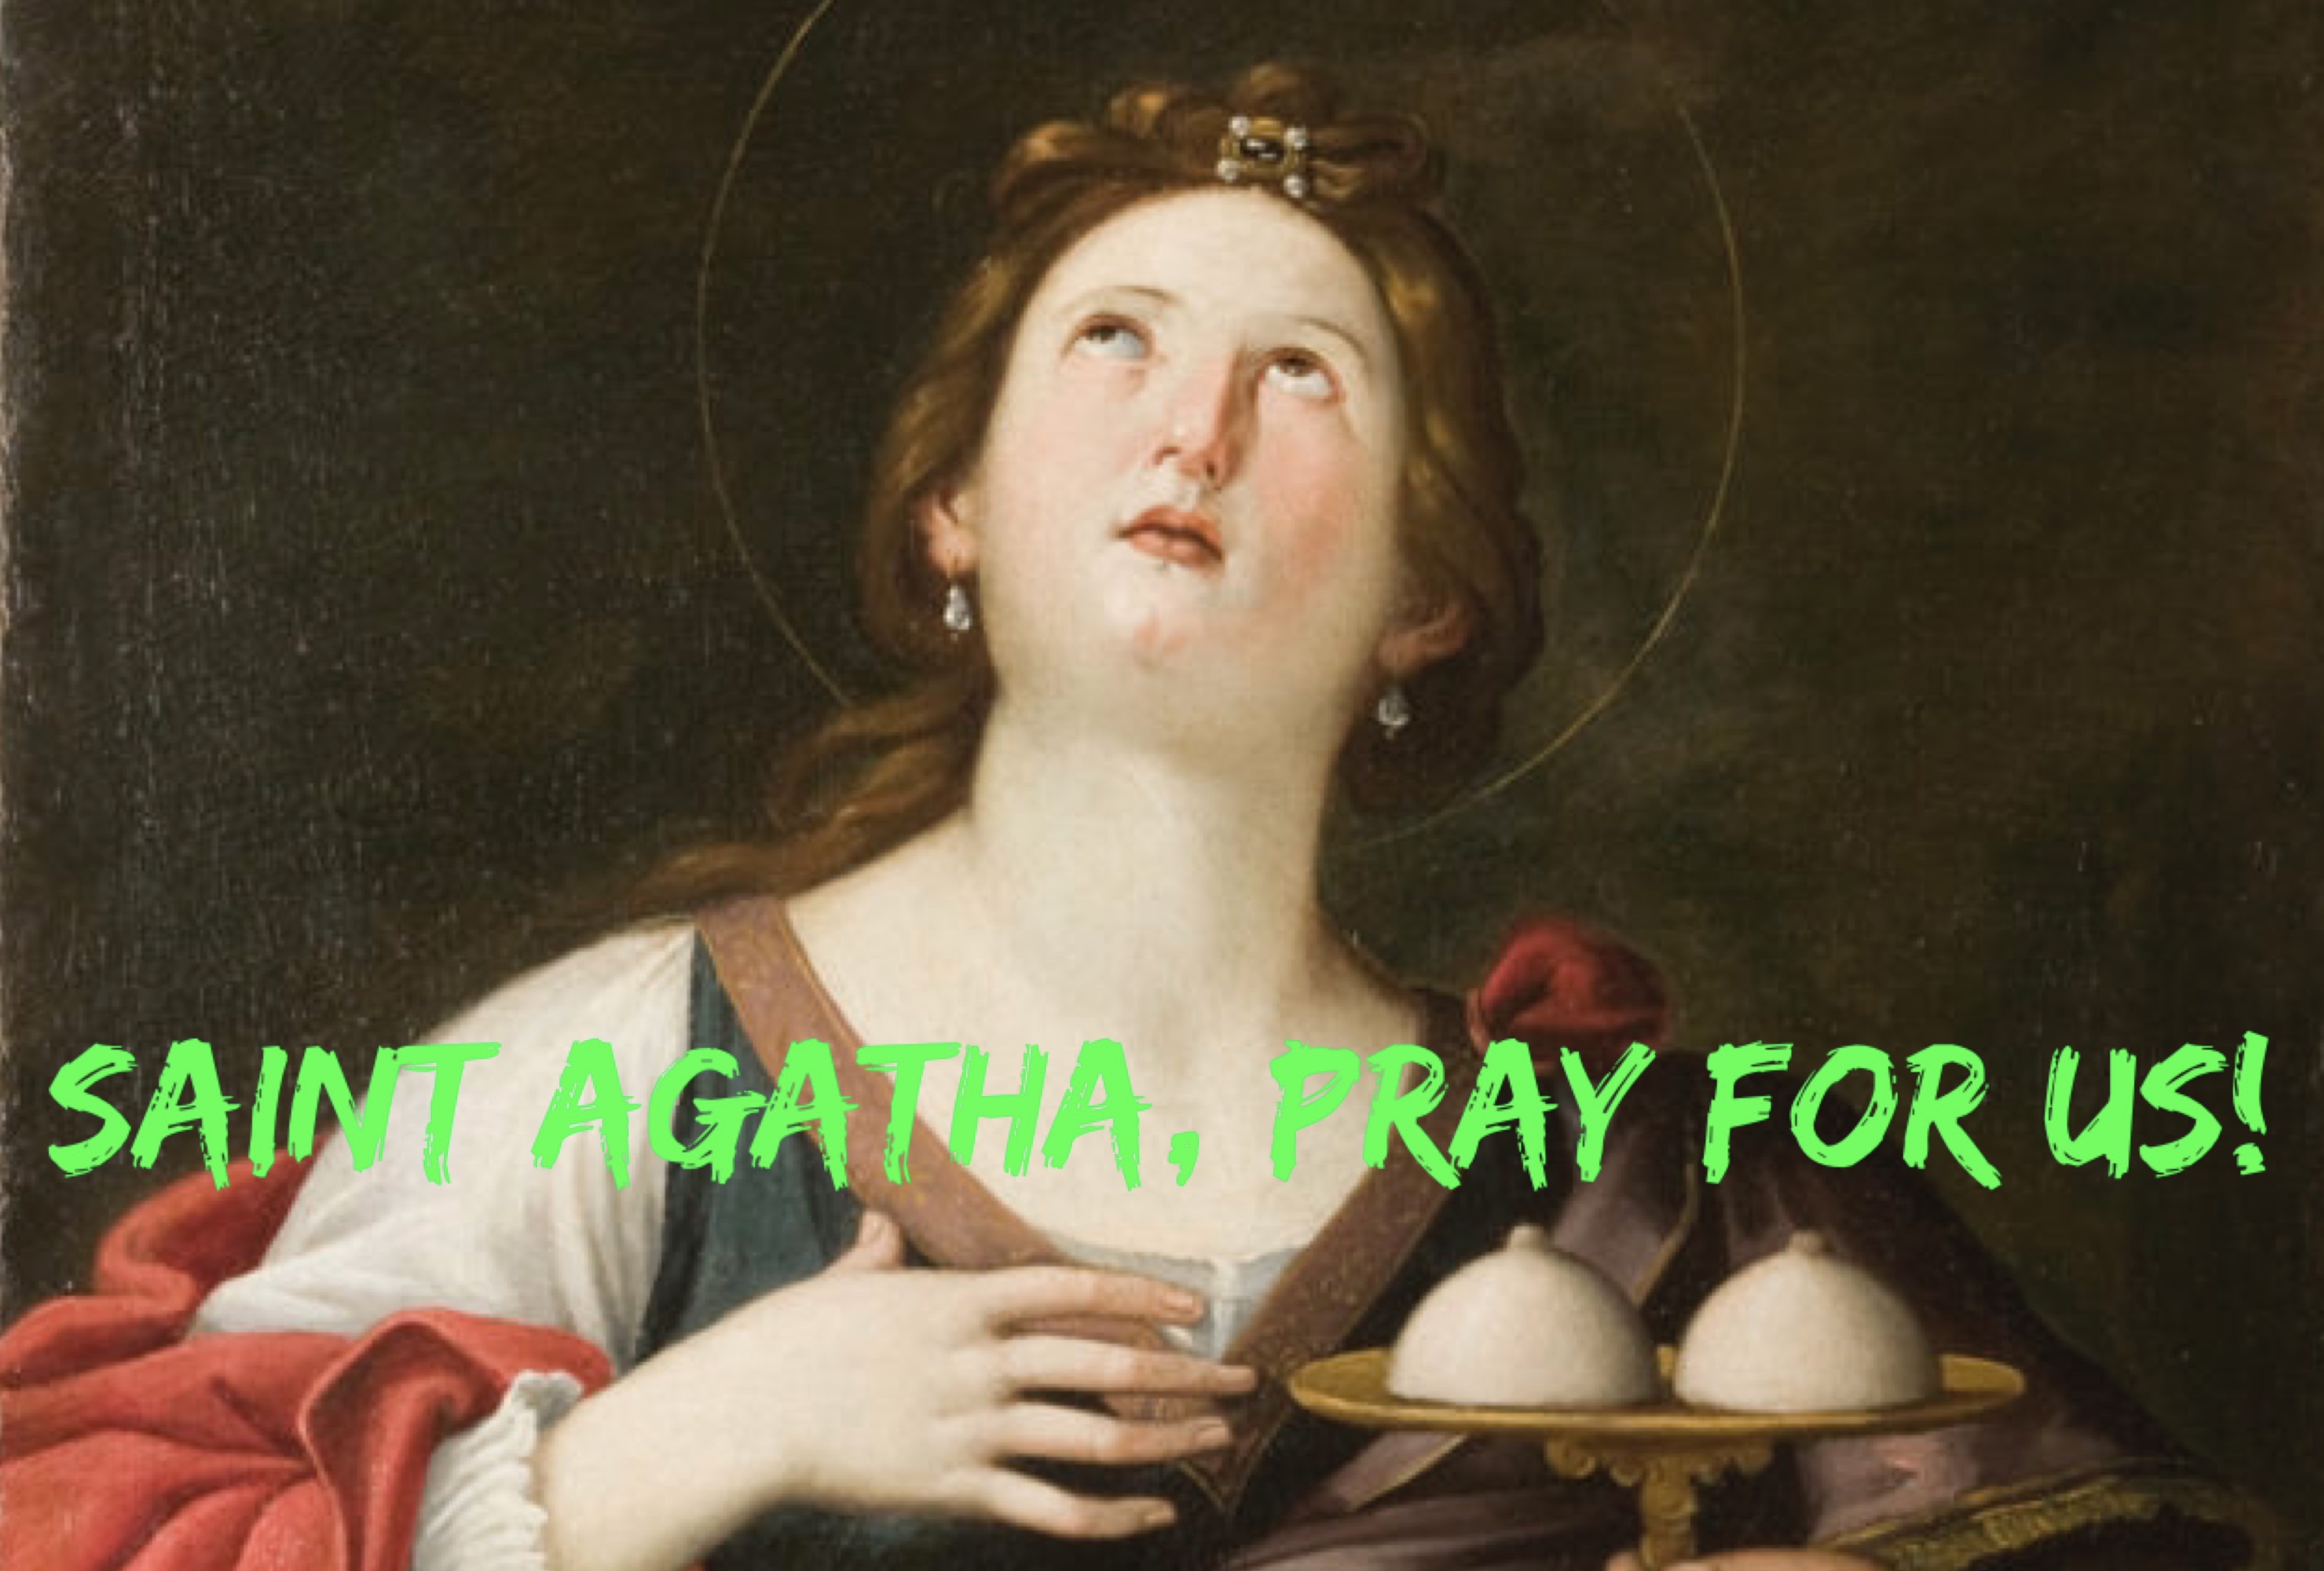 5th February – Saint Agatha